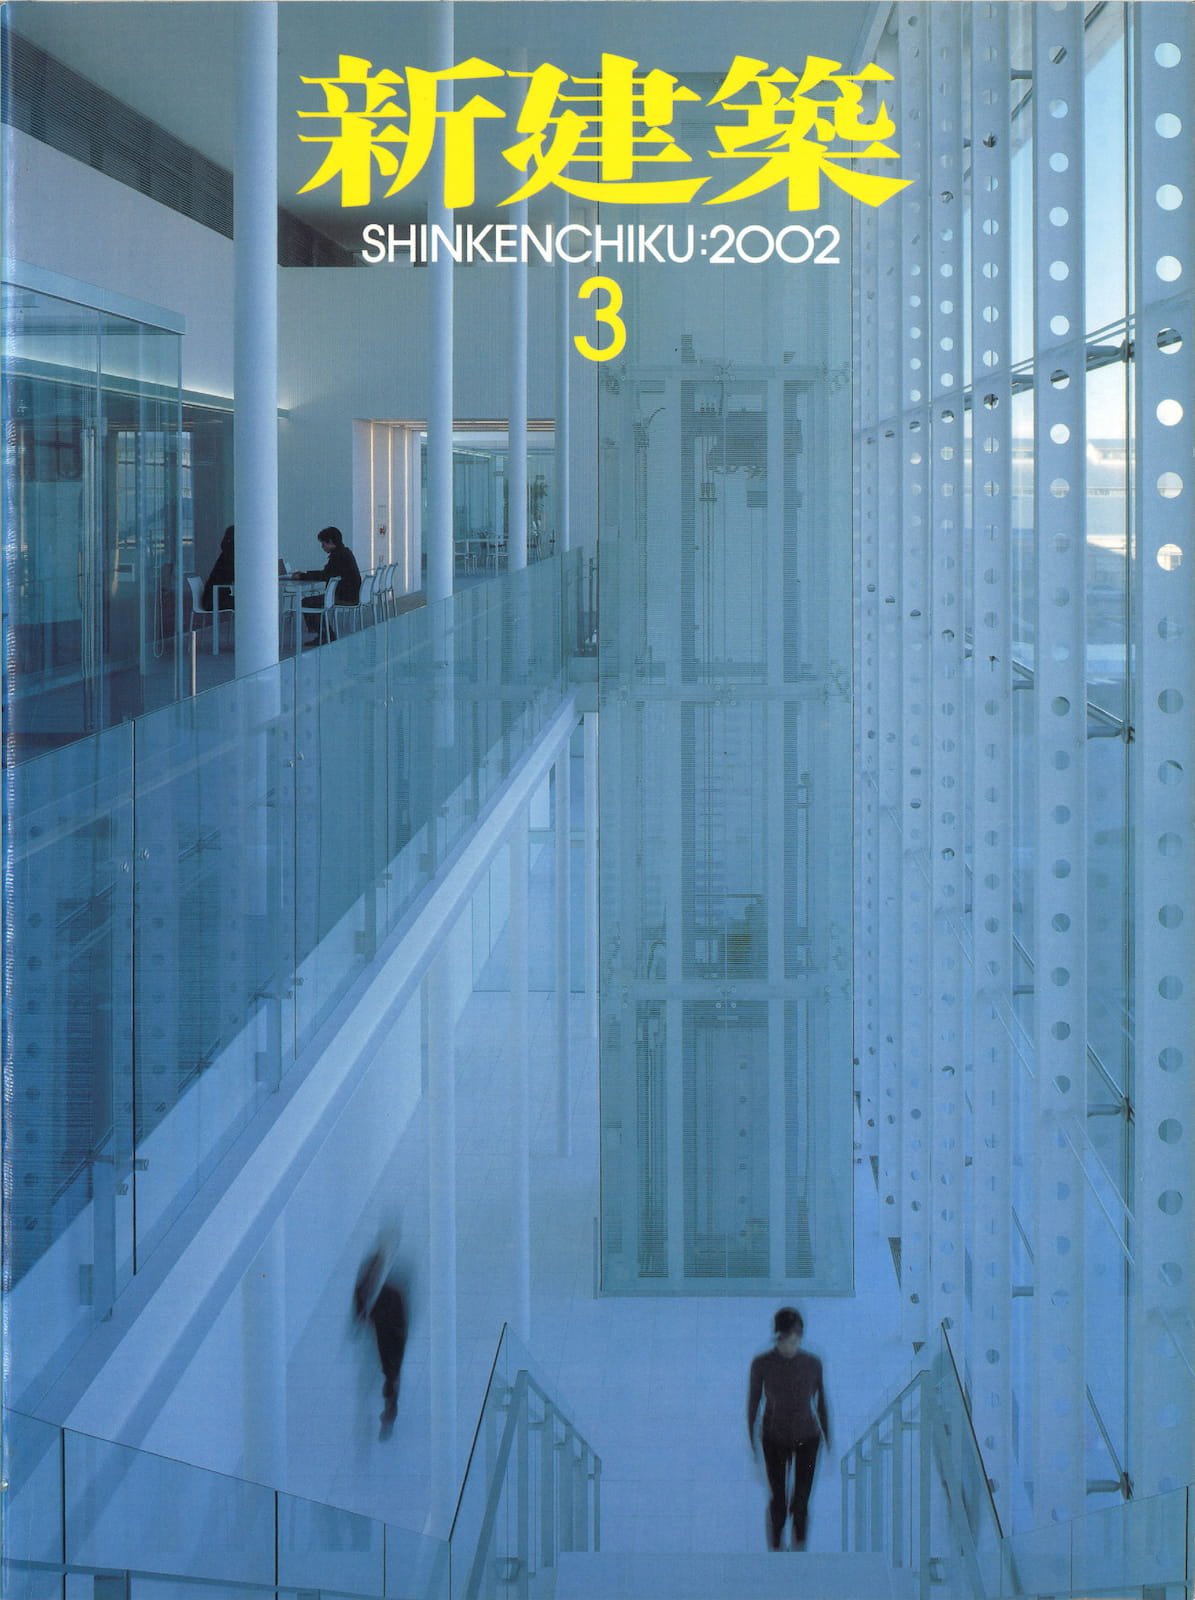 新建築 - New Architecture 2002-03_Page_1.jpg